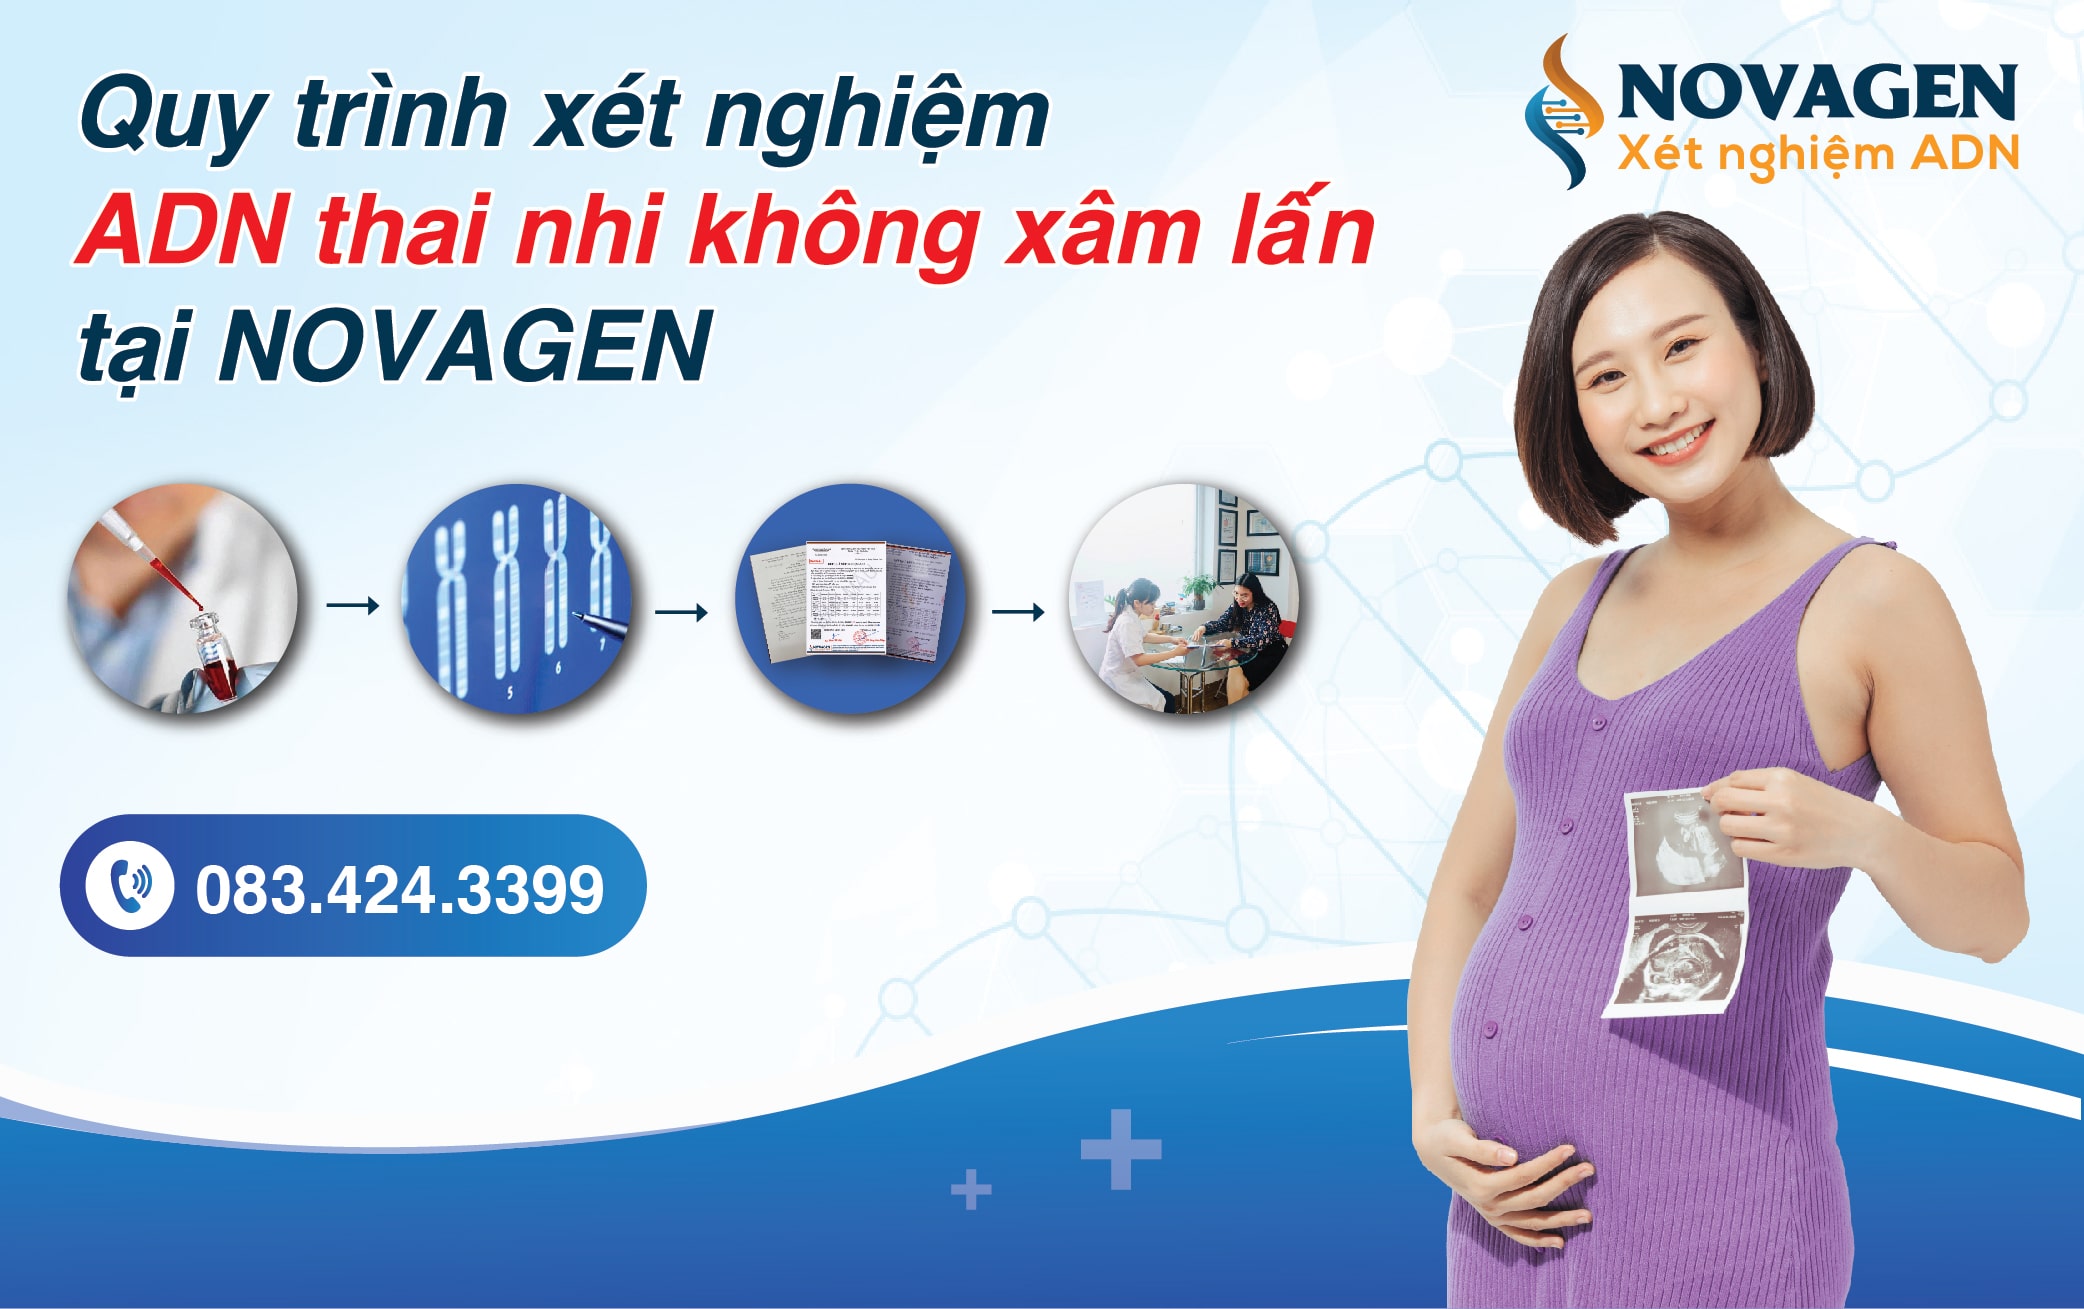 Quy trình xét nghiệm ADN Thai nhi tại NOVAGEN